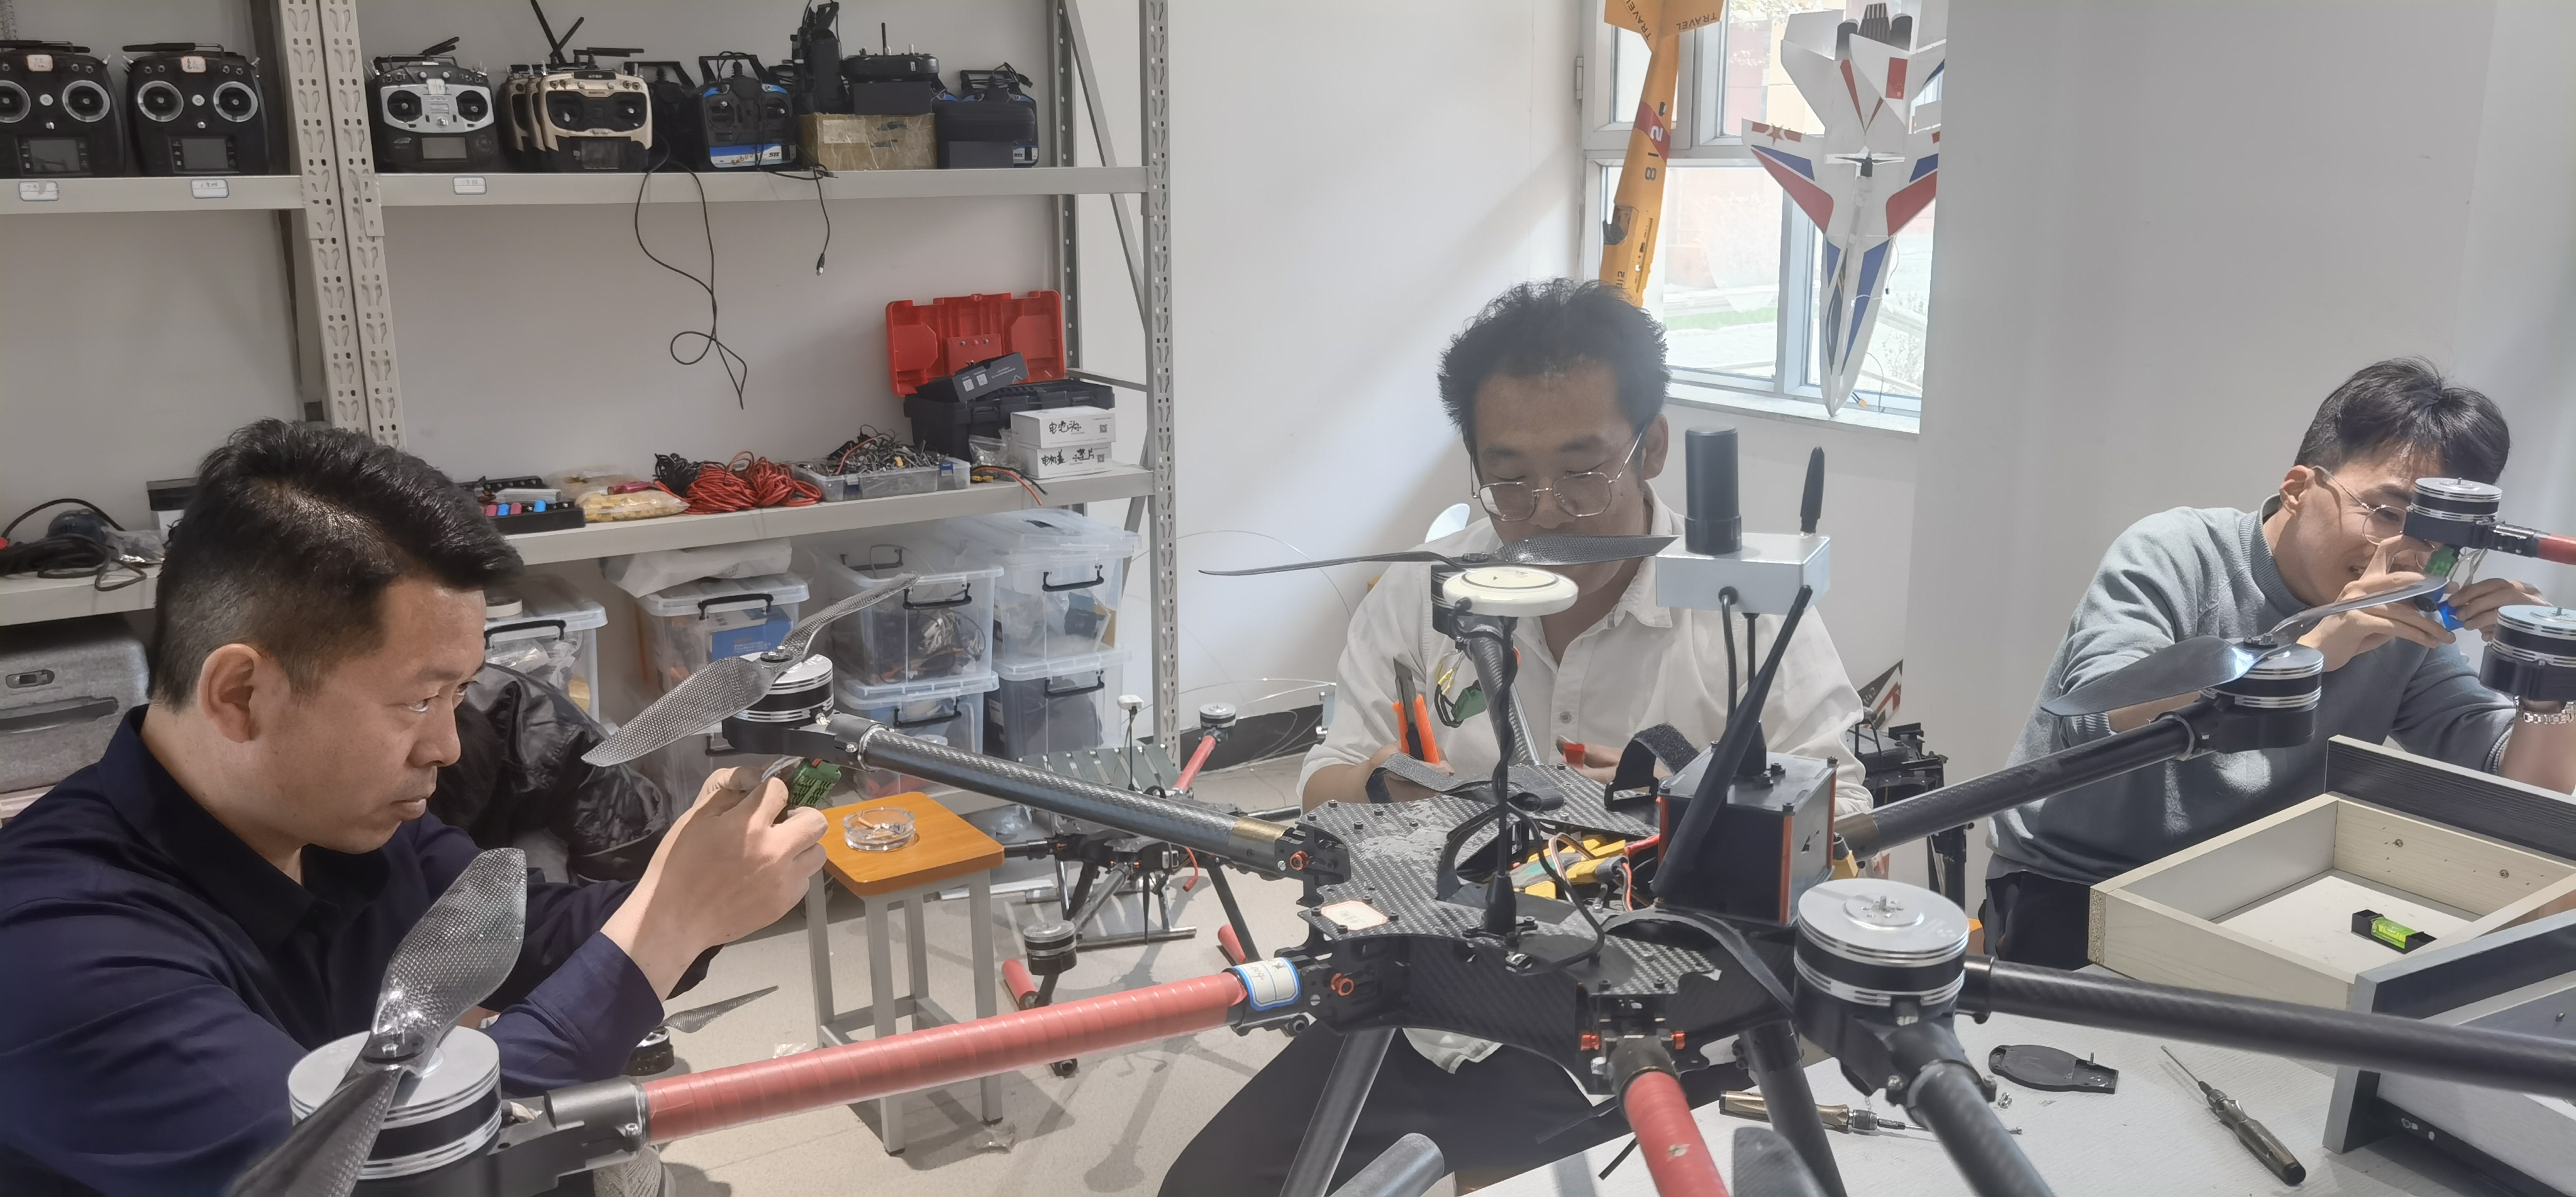 新疆青少年无人机培训丨在兴趣中玩转无人机！培养航空天赋！